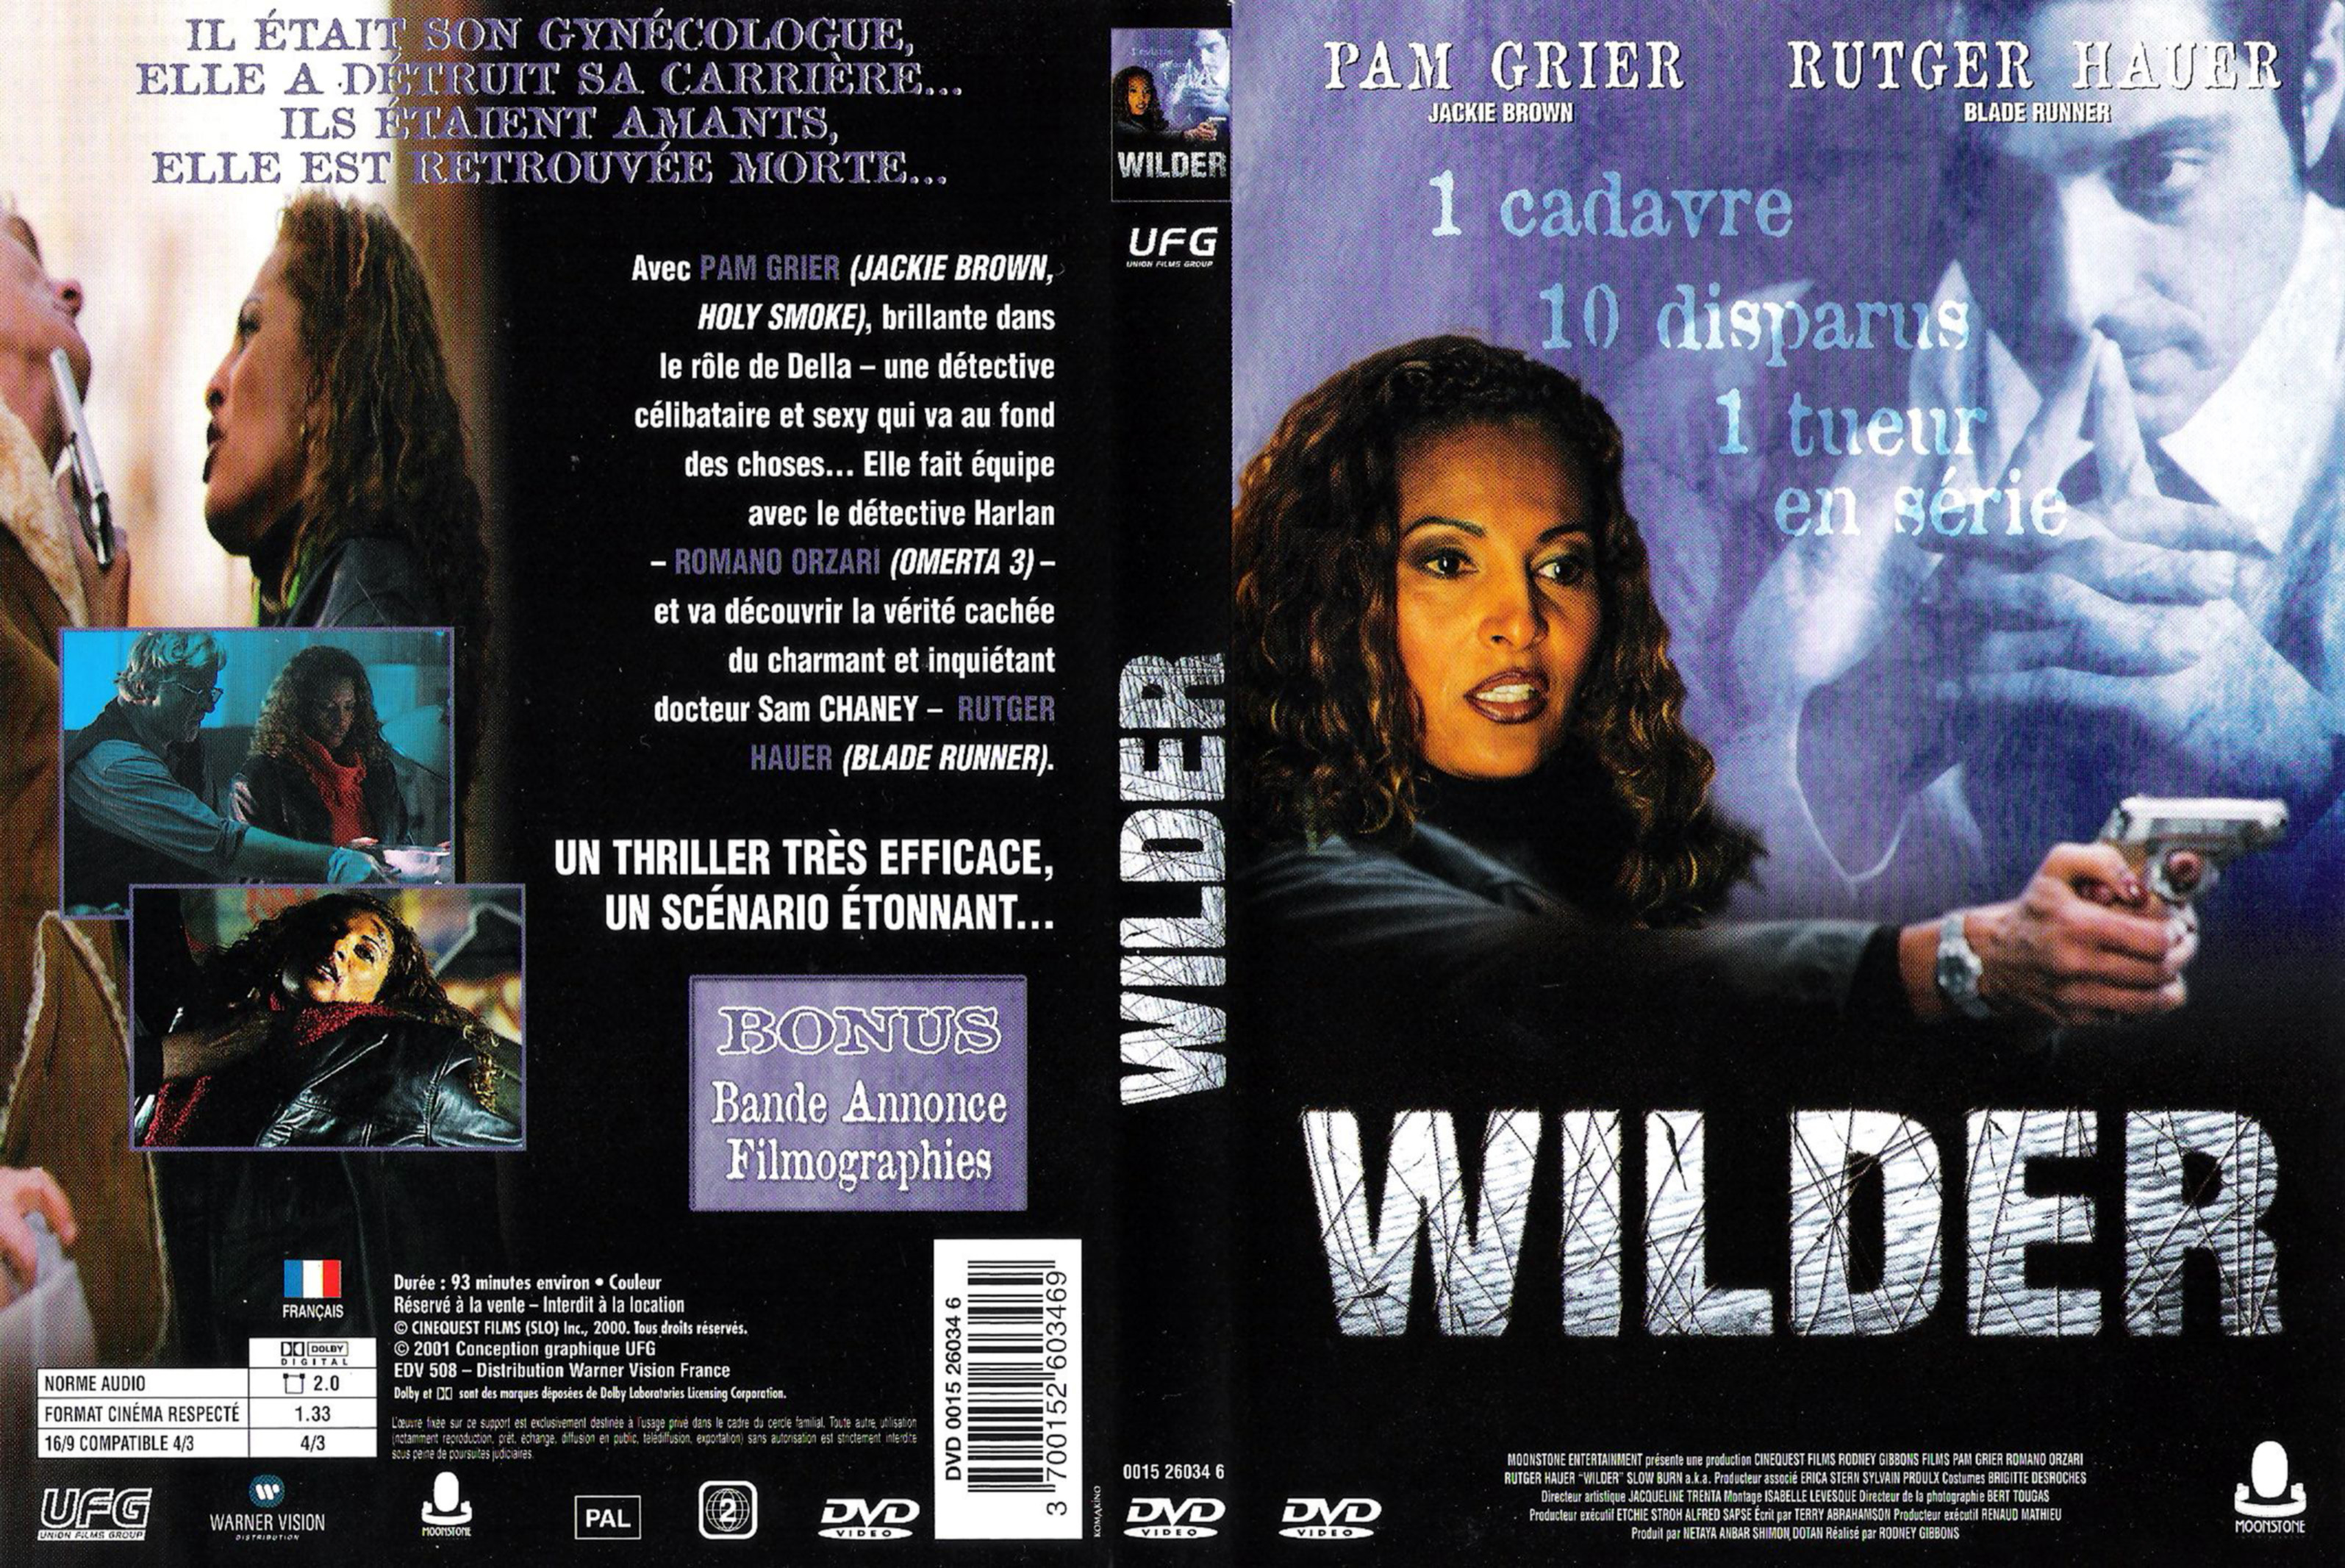 Jaquette DVD Wilder v2